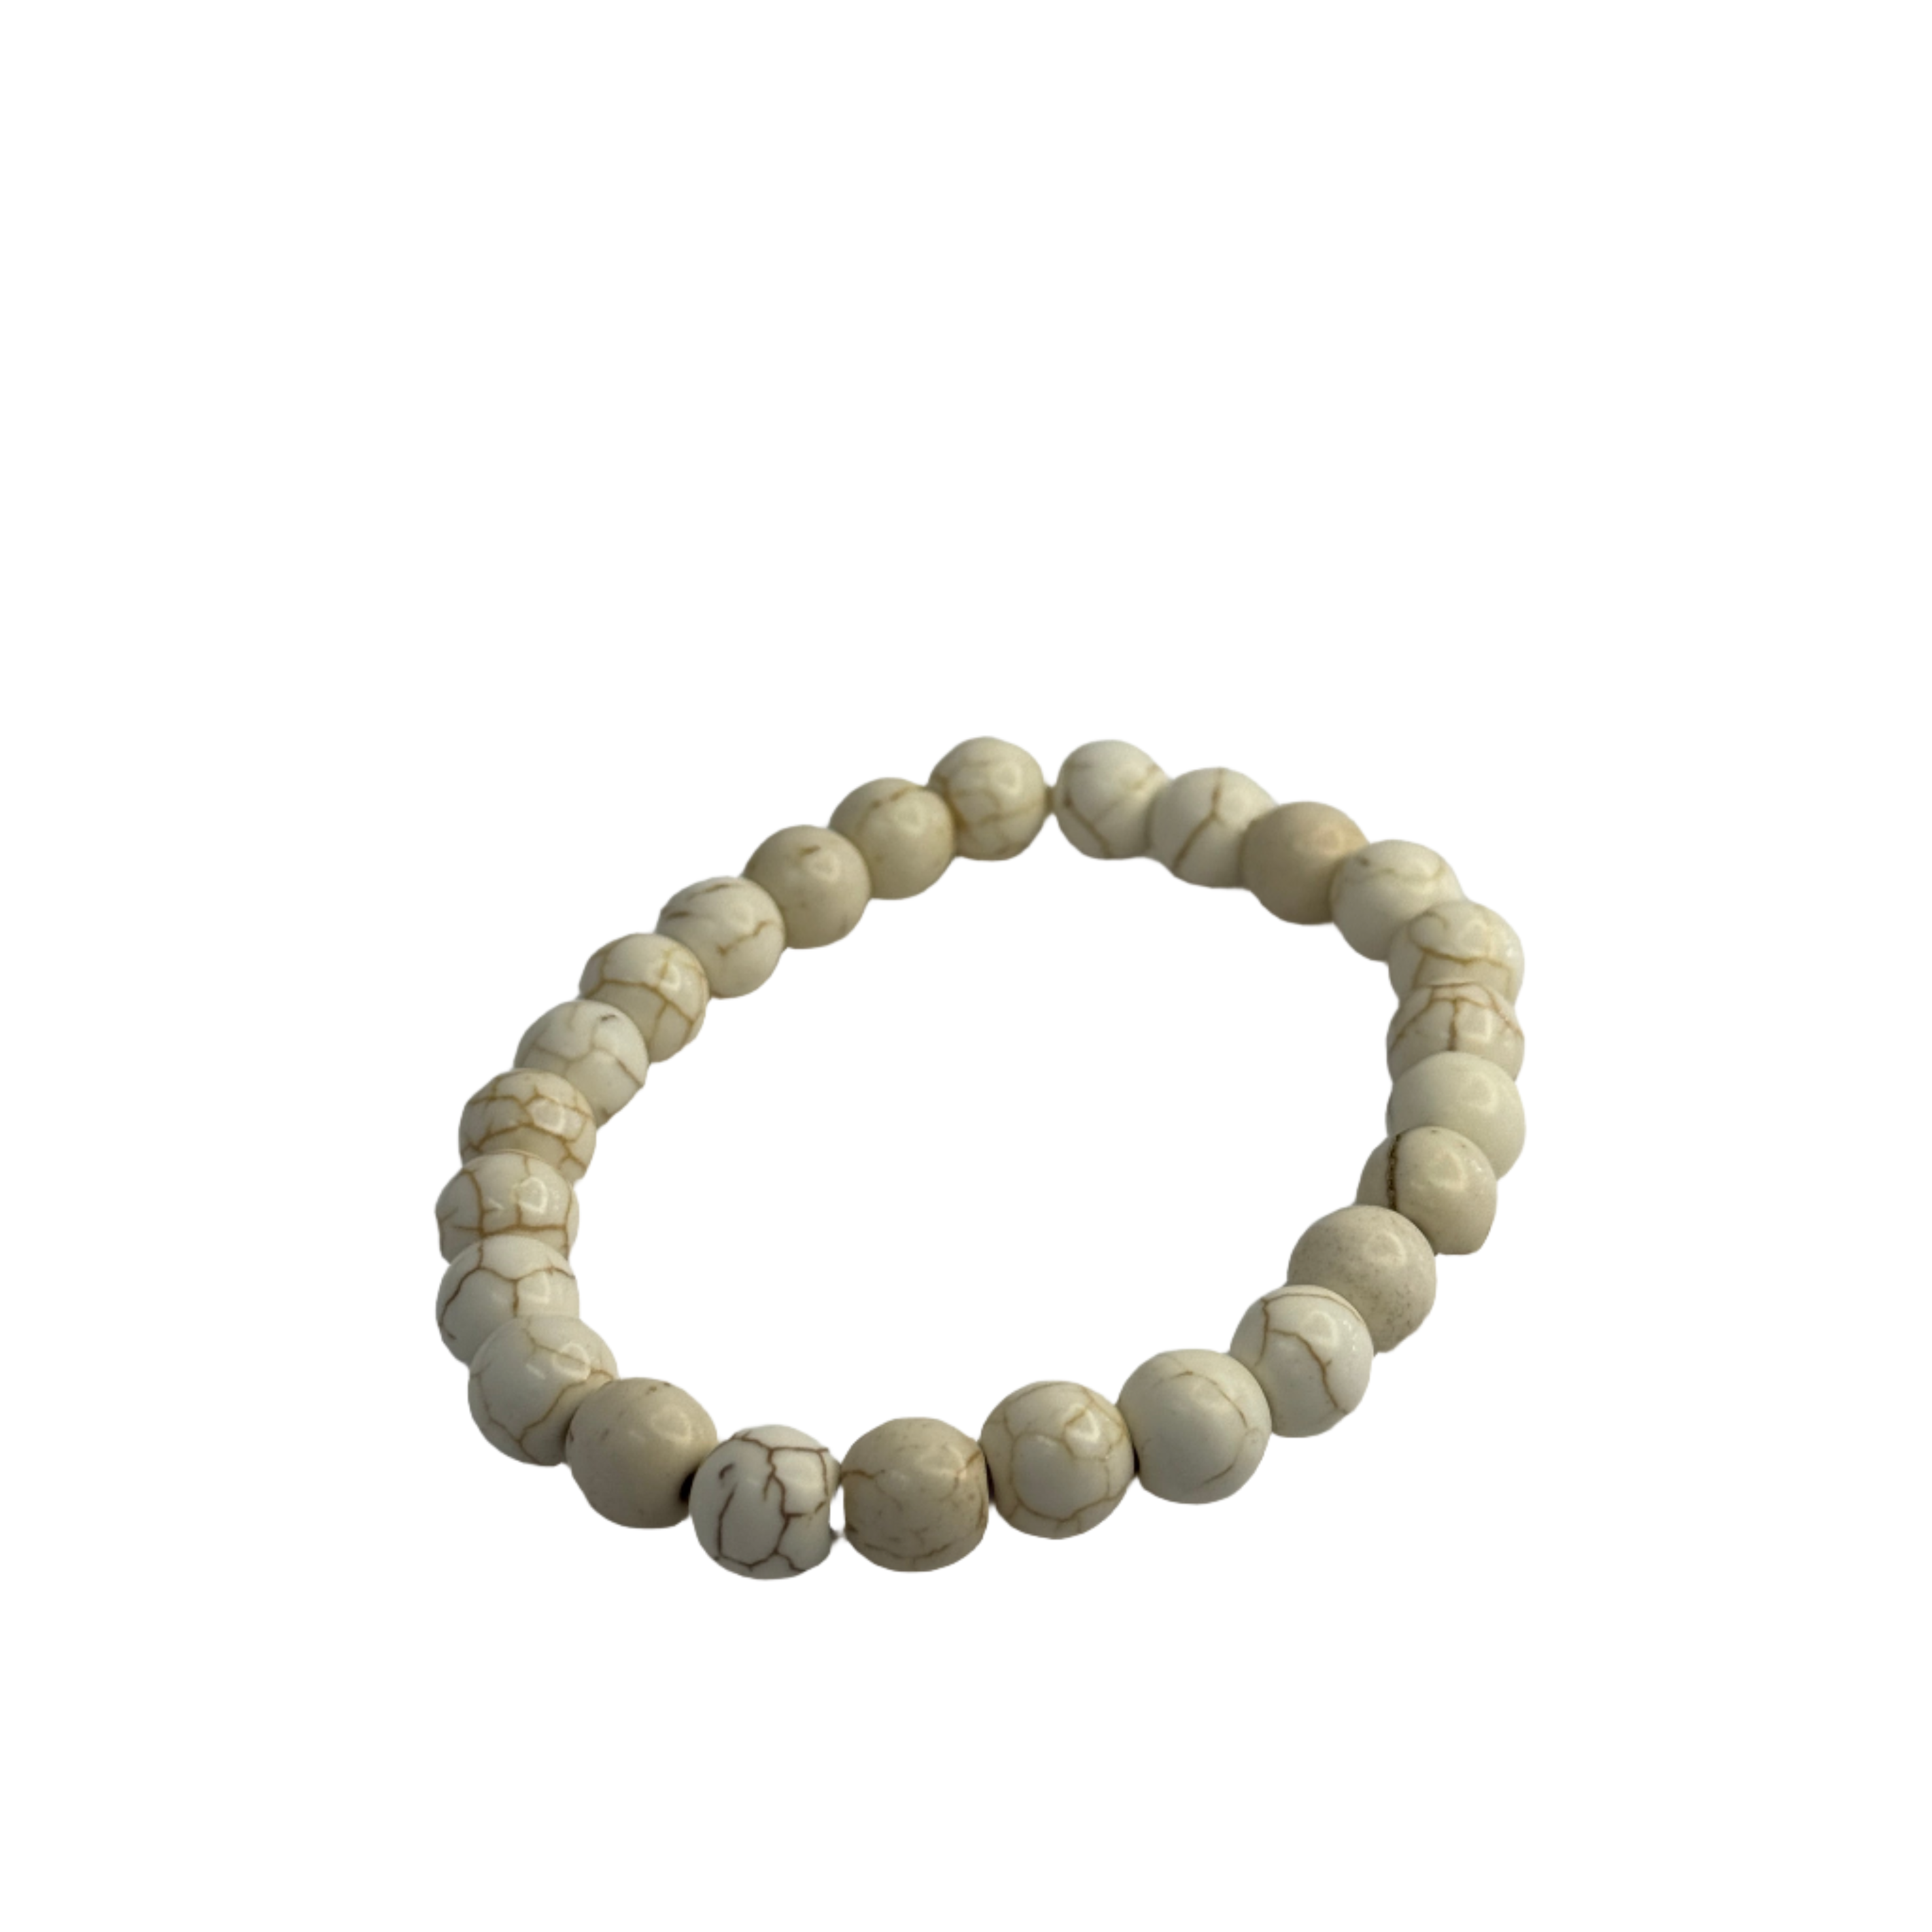 White Turquoise bracelet, 8mm Gemstone beads